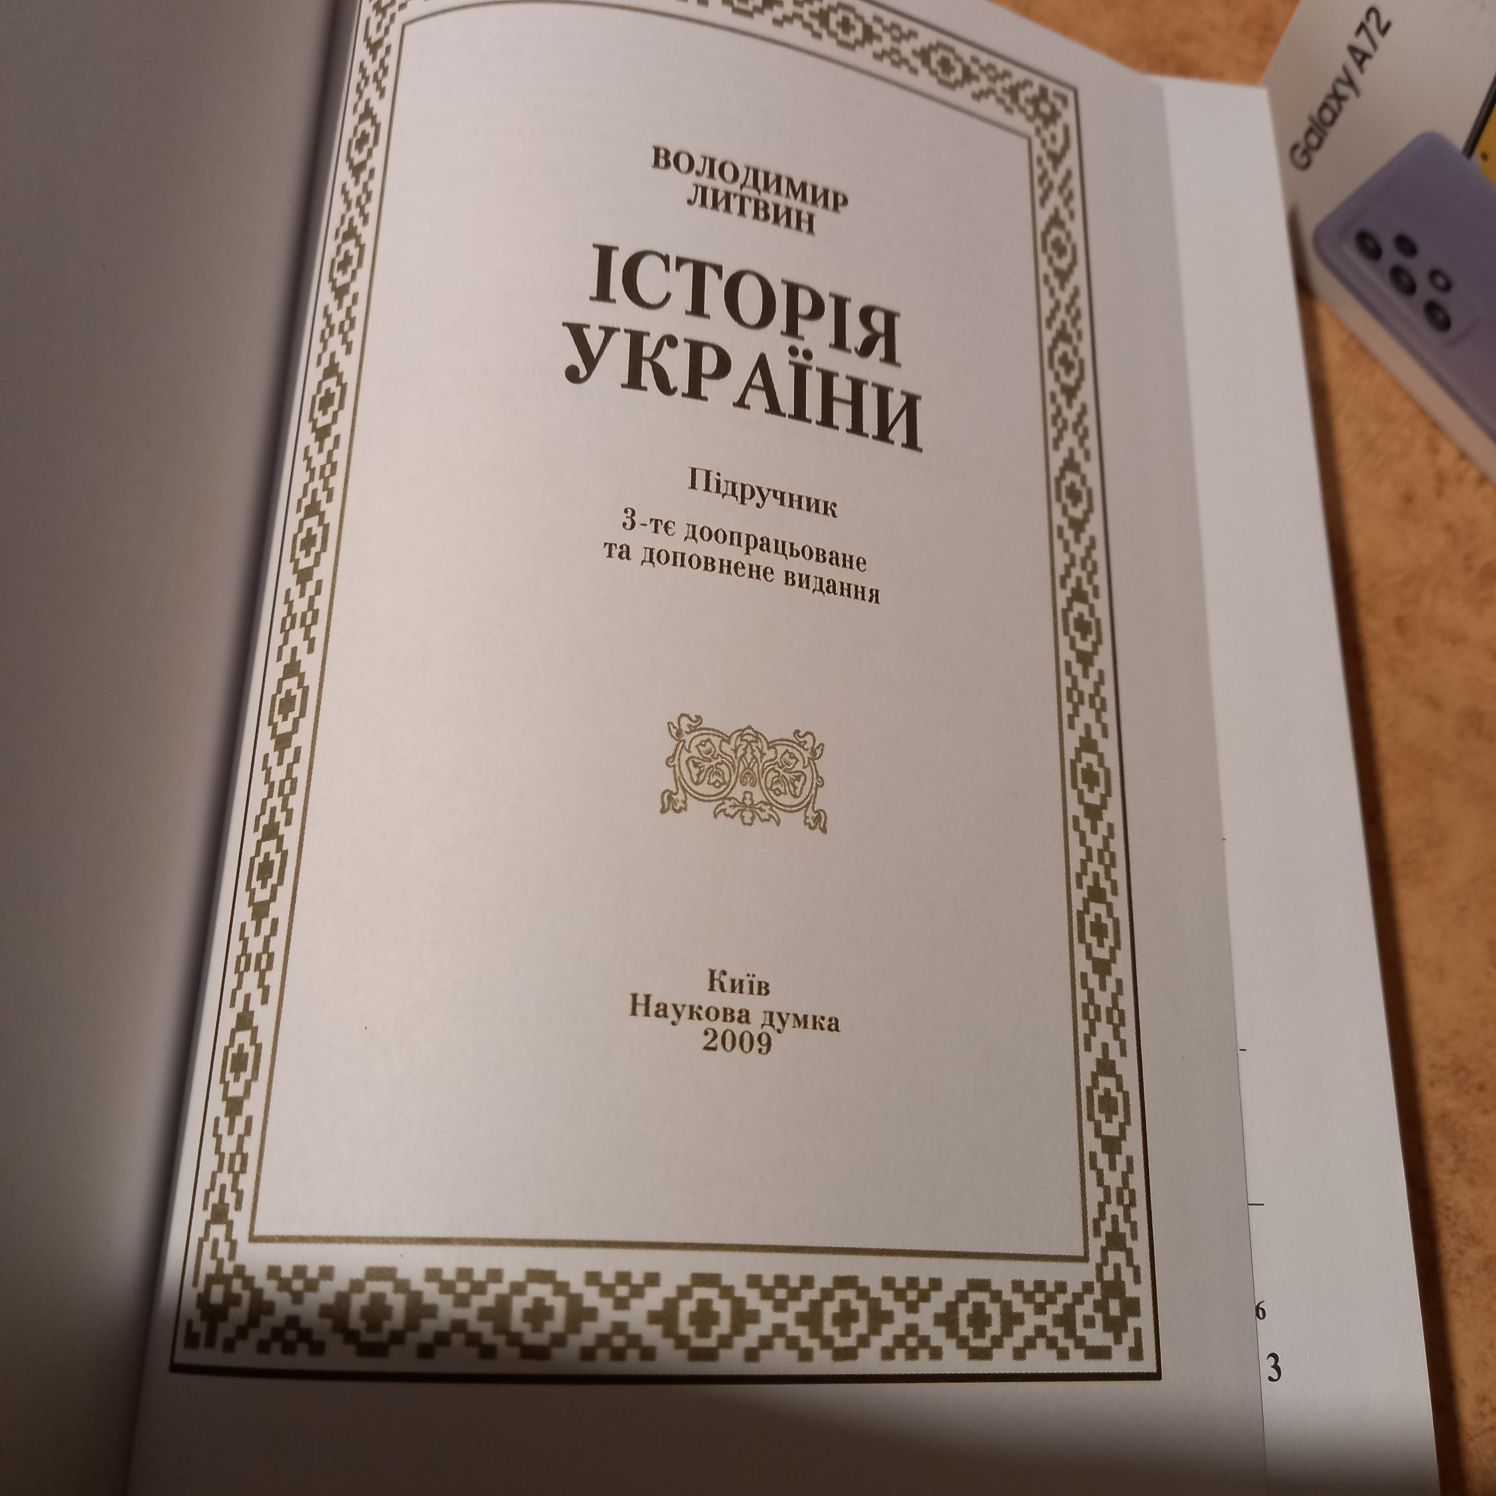 История Украины учебник, Киев,2009,наукова думка, на украинском языке